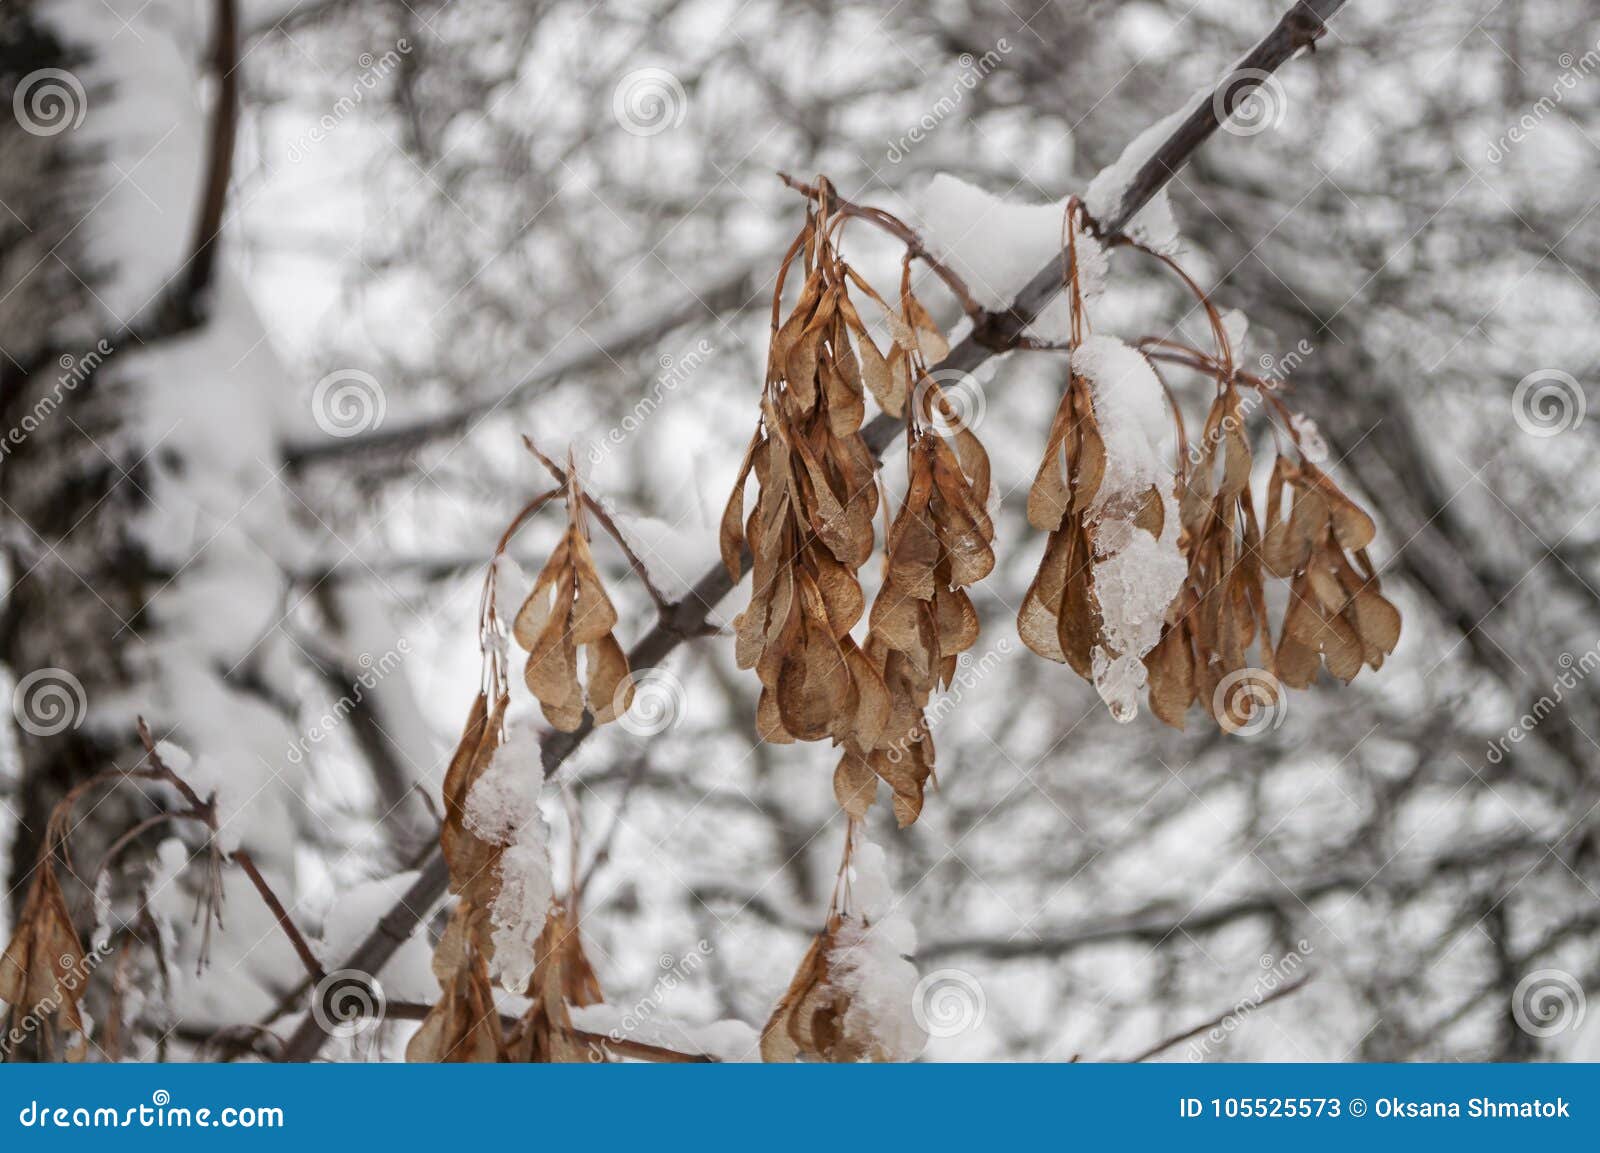 Ветвь зимы деревьев при сухие морозные листья коричневого цвета покрытые с белым снегом